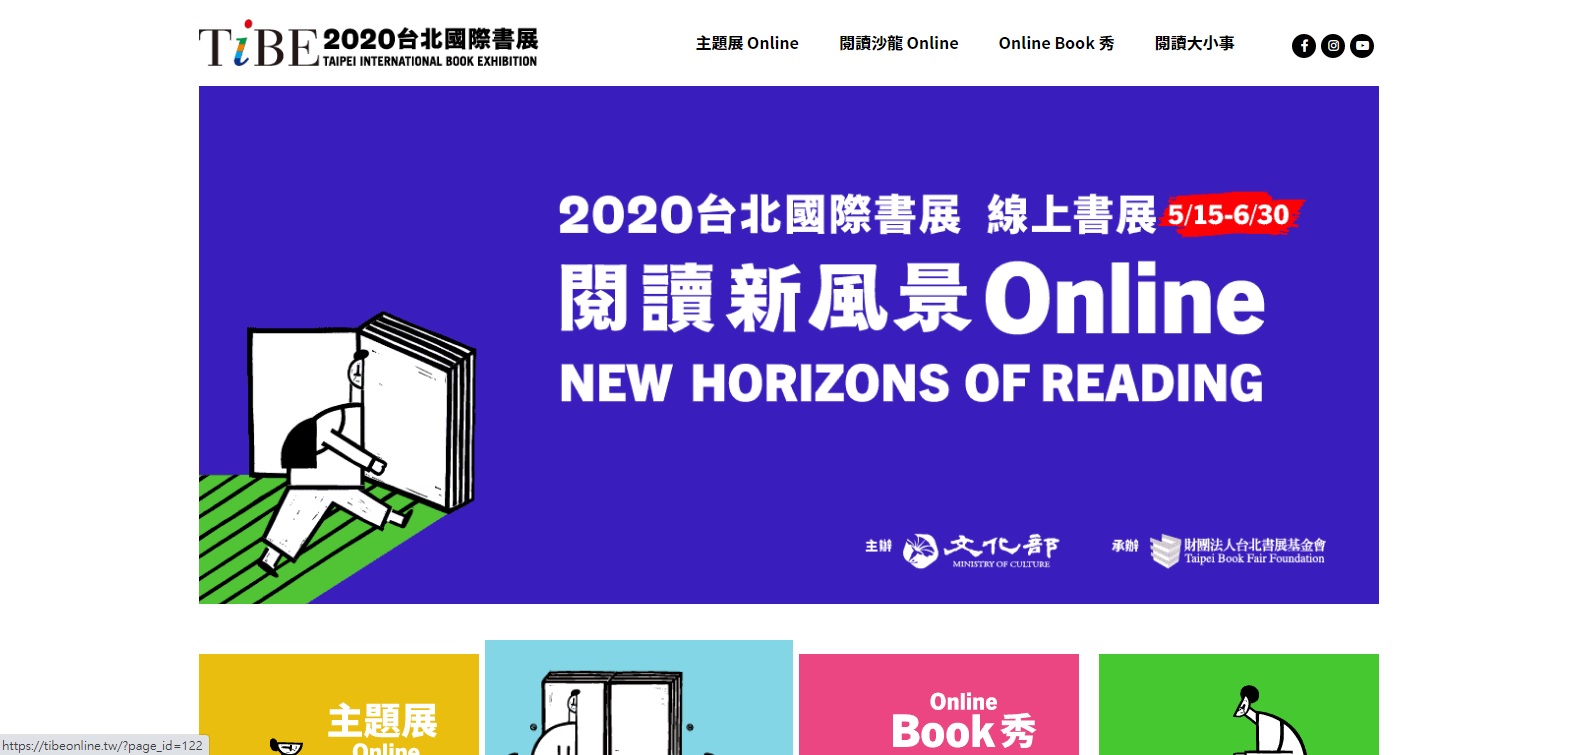 [活動資訊]2020台北國際書展